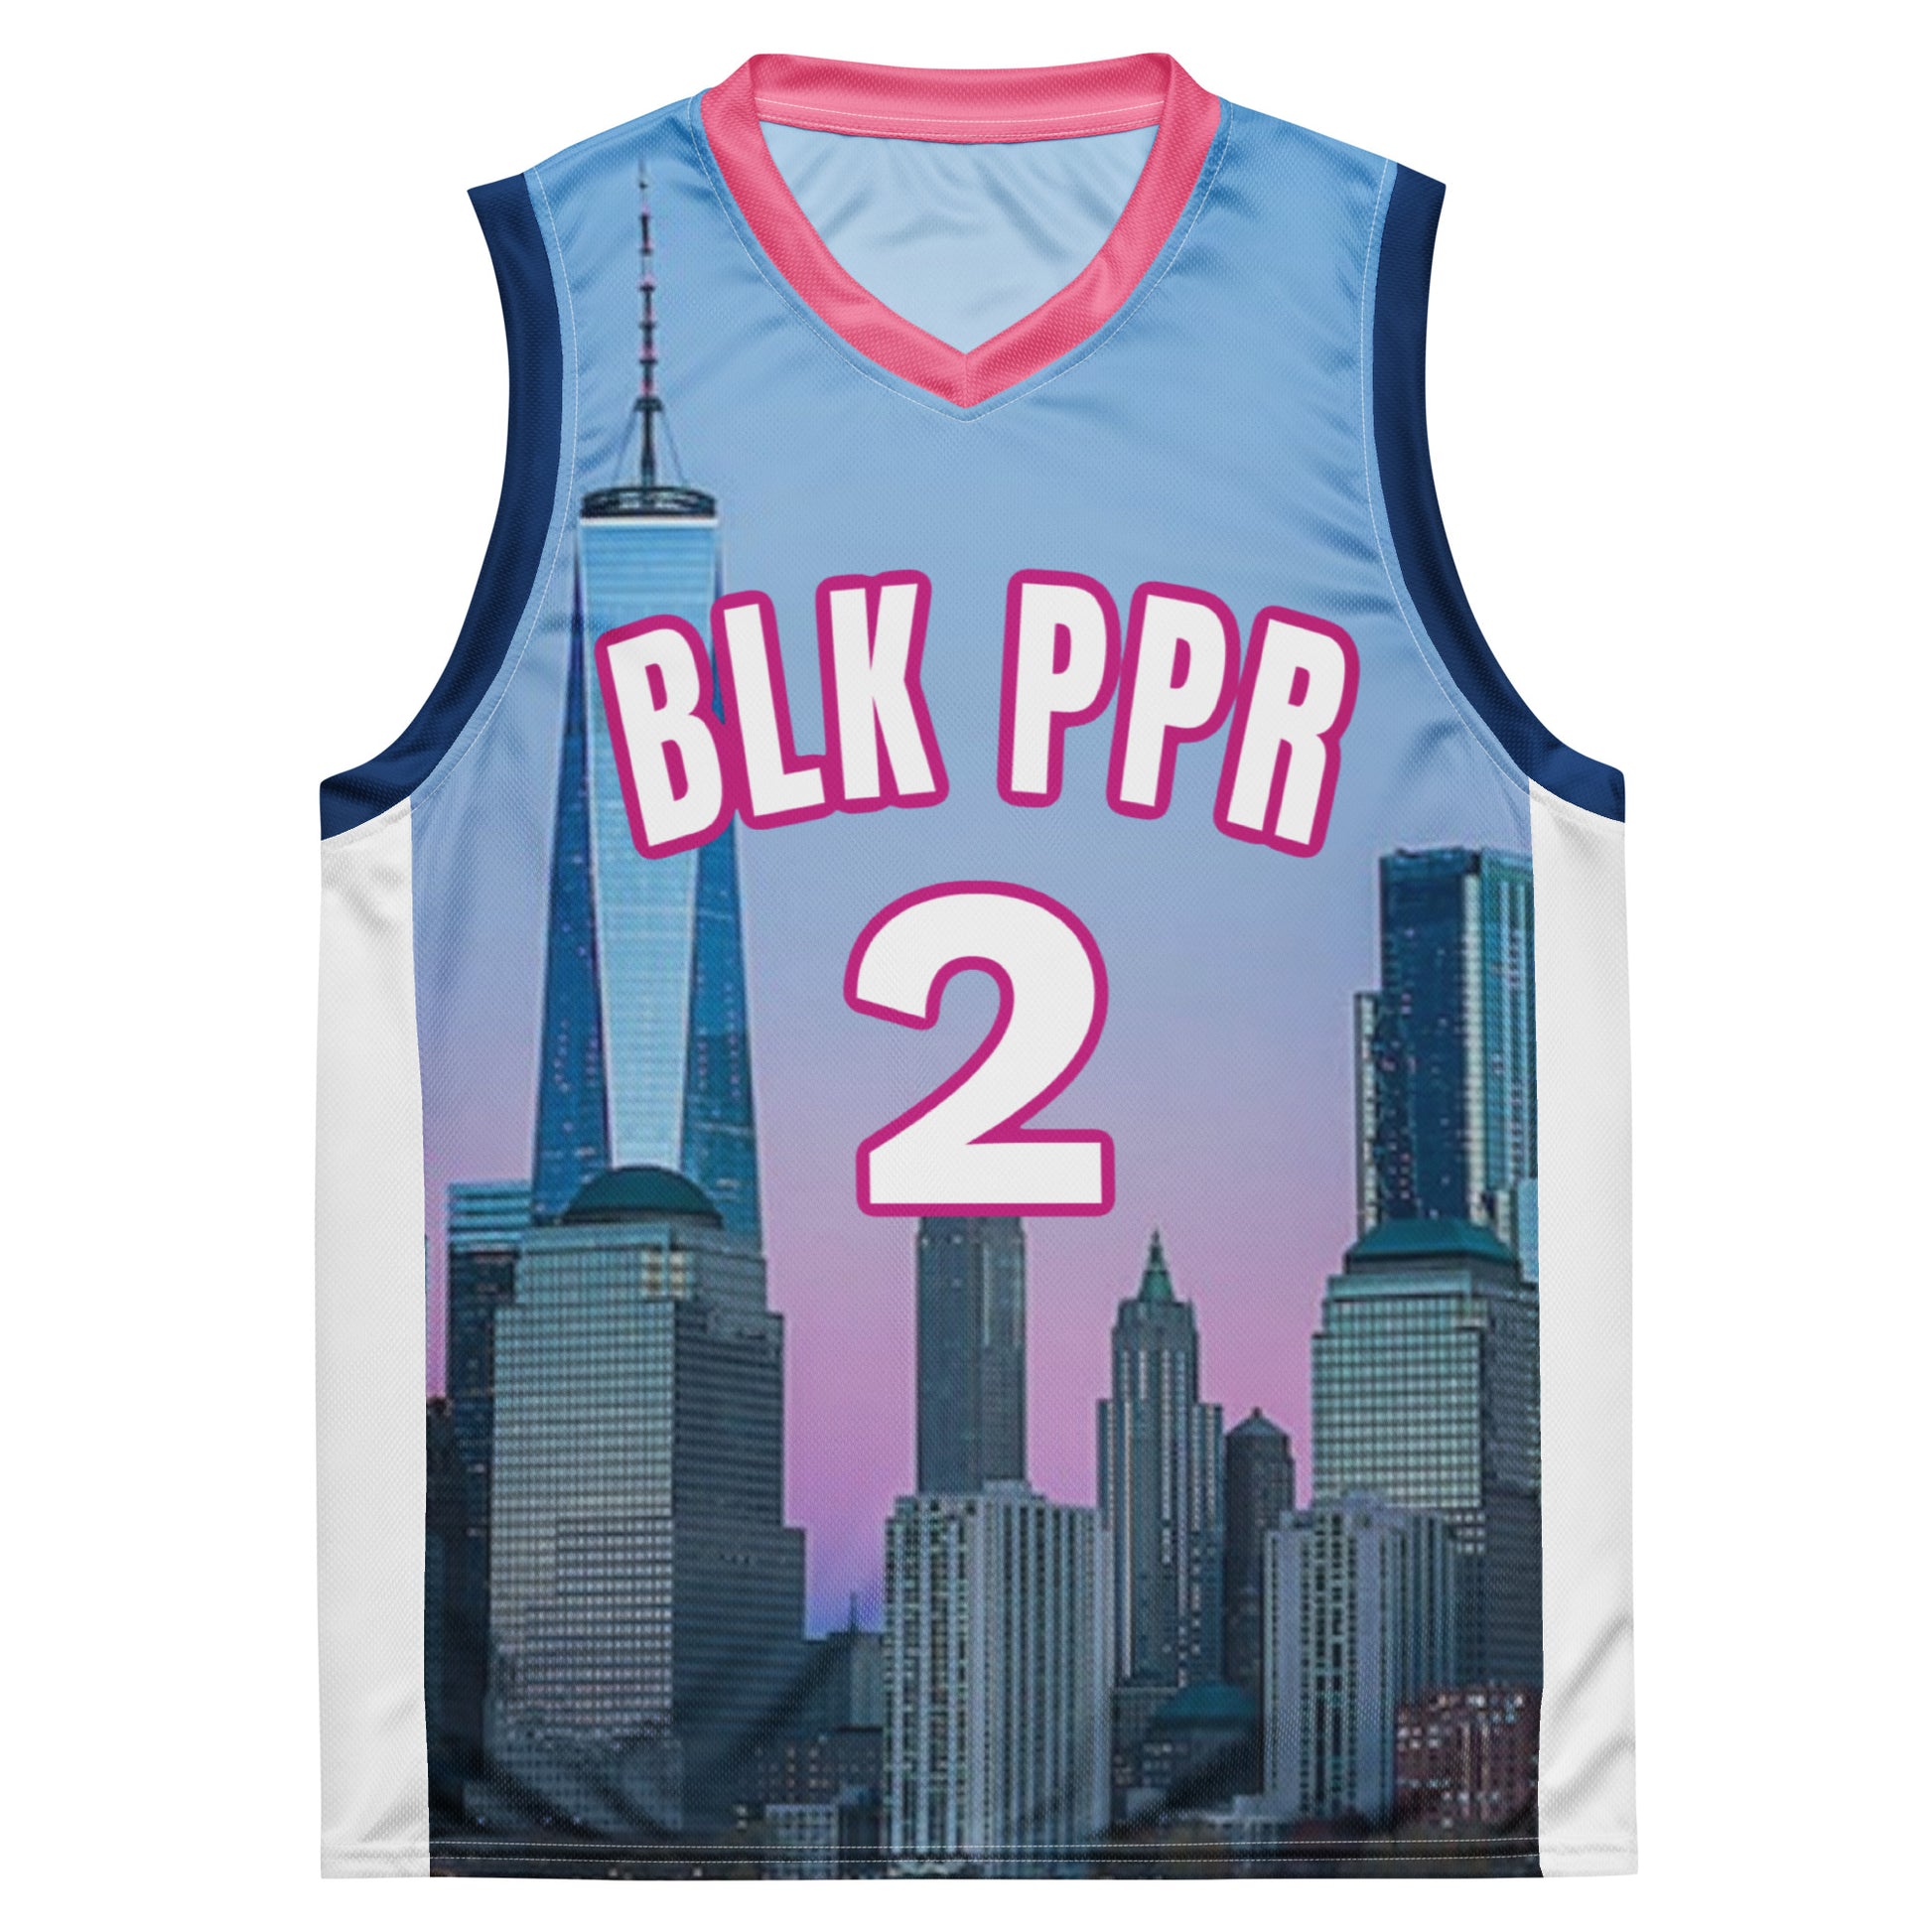 Jersey - BLK PPR B-Ball Skyline – BLACK PAPER STREETWEAR